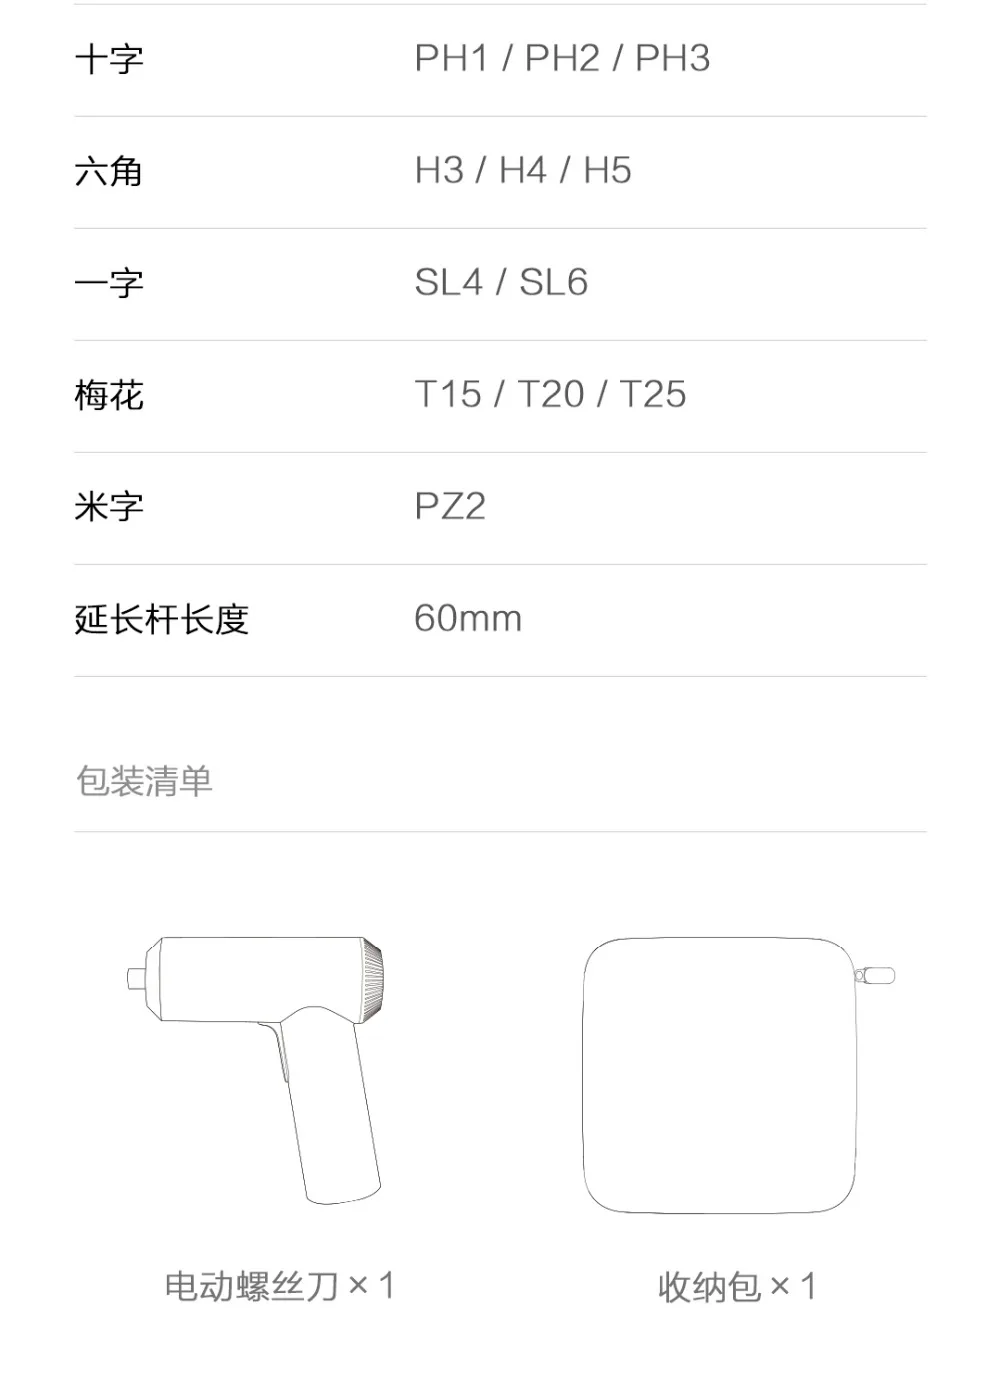 Xiaomi Mijia Electric Screwdriver (20)